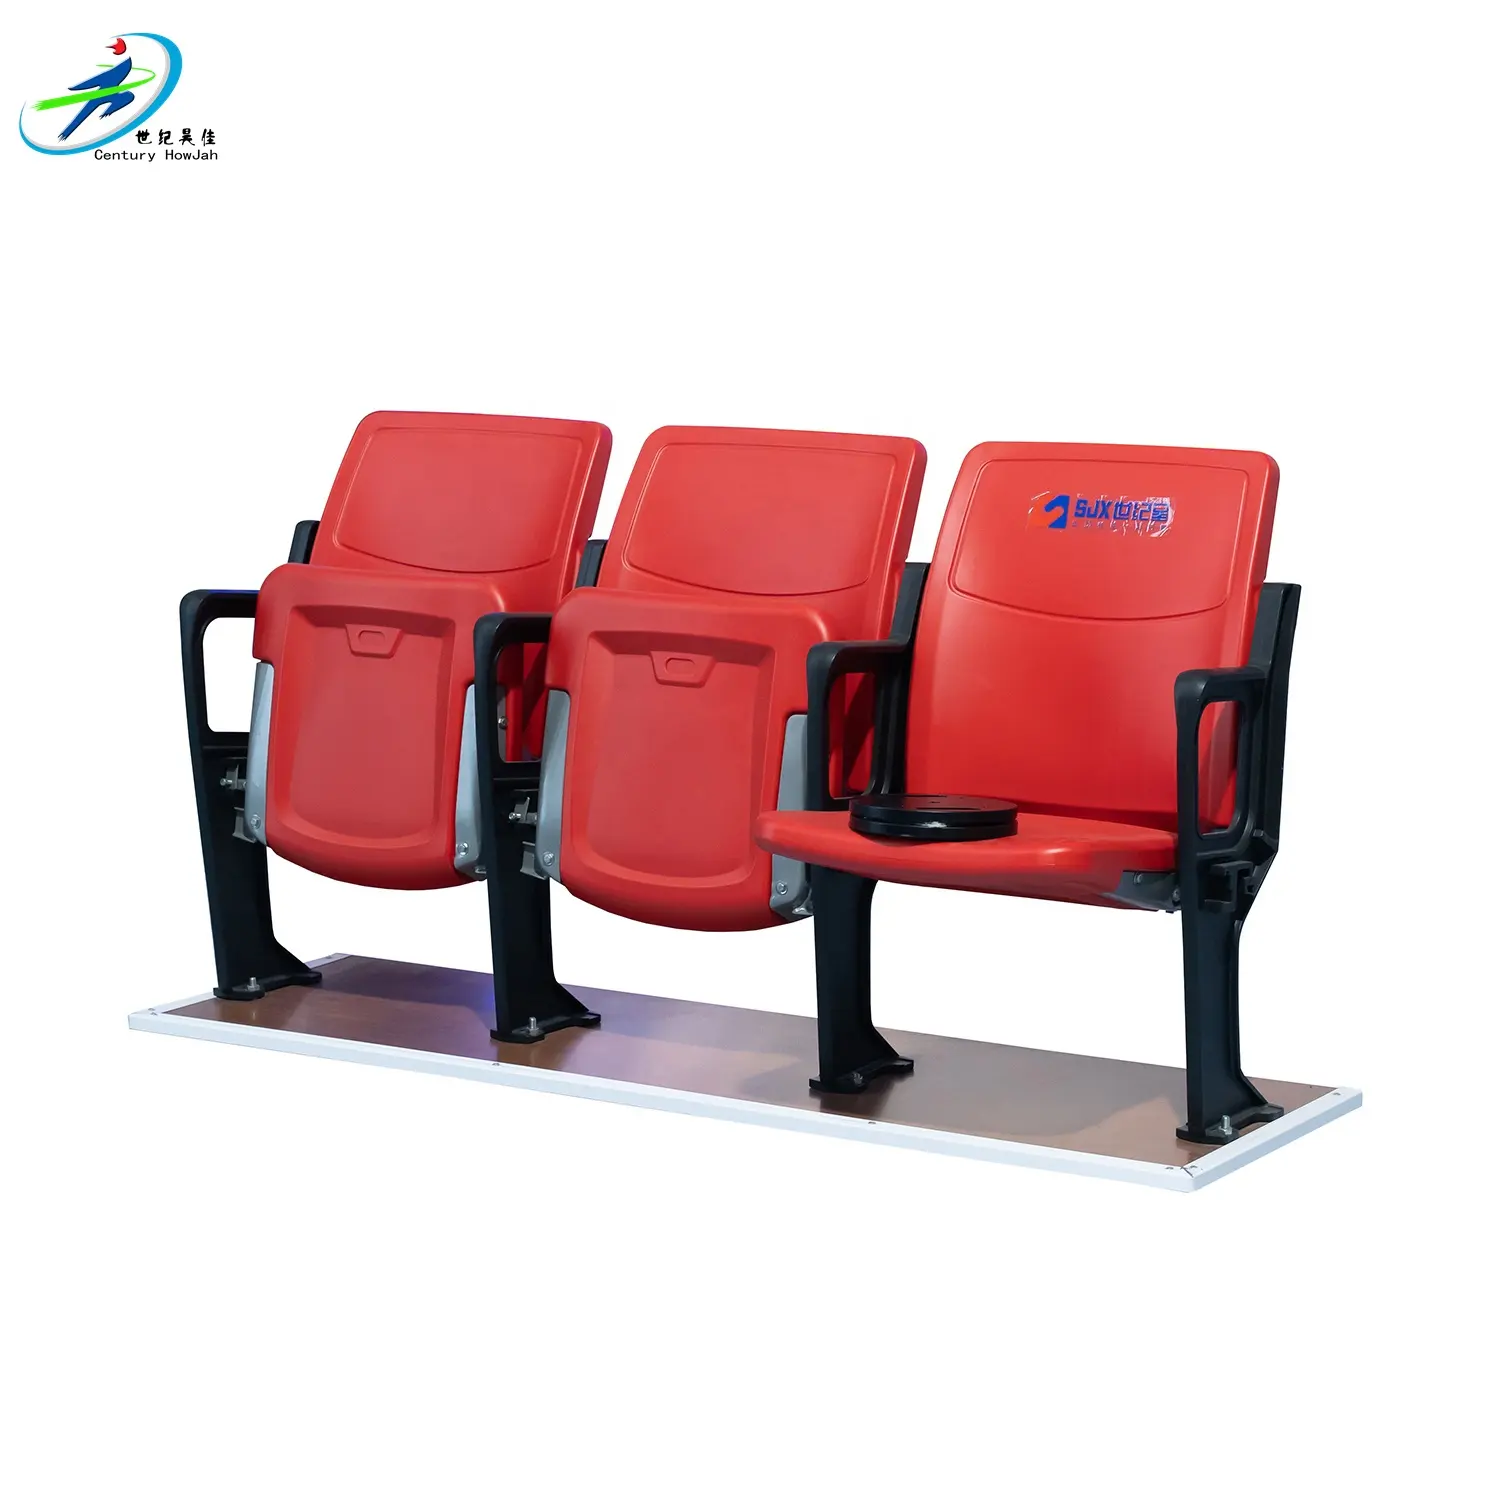 Toptan stadyum koltuğu kol dayama ile stadyum koltukları stadyum koltuğu aşağı katlayın